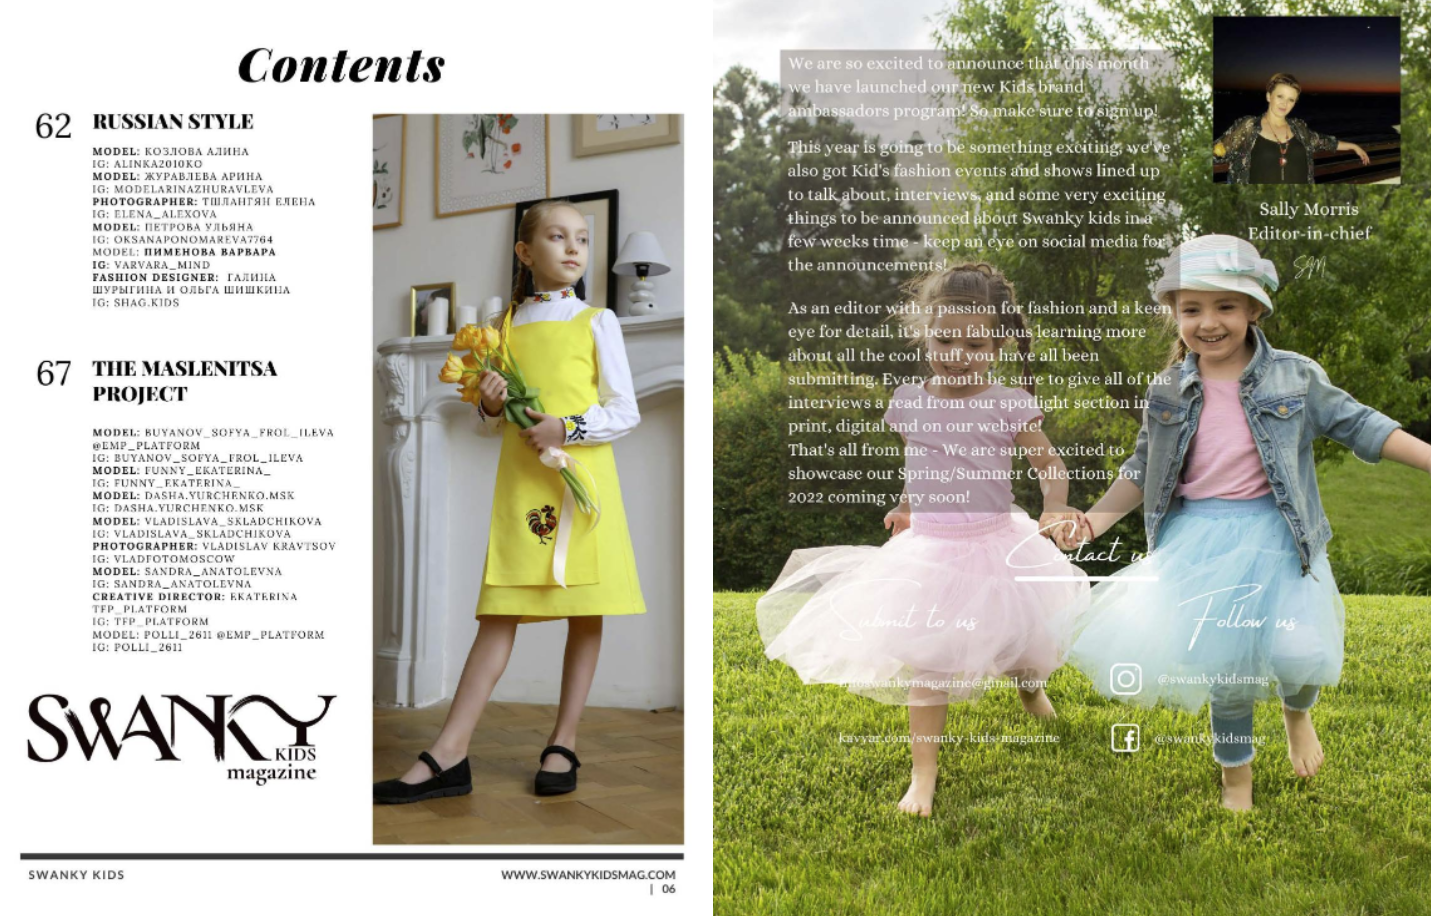 Swanky Kids Magazine APRIL 2022 VOL XVII Issue 10